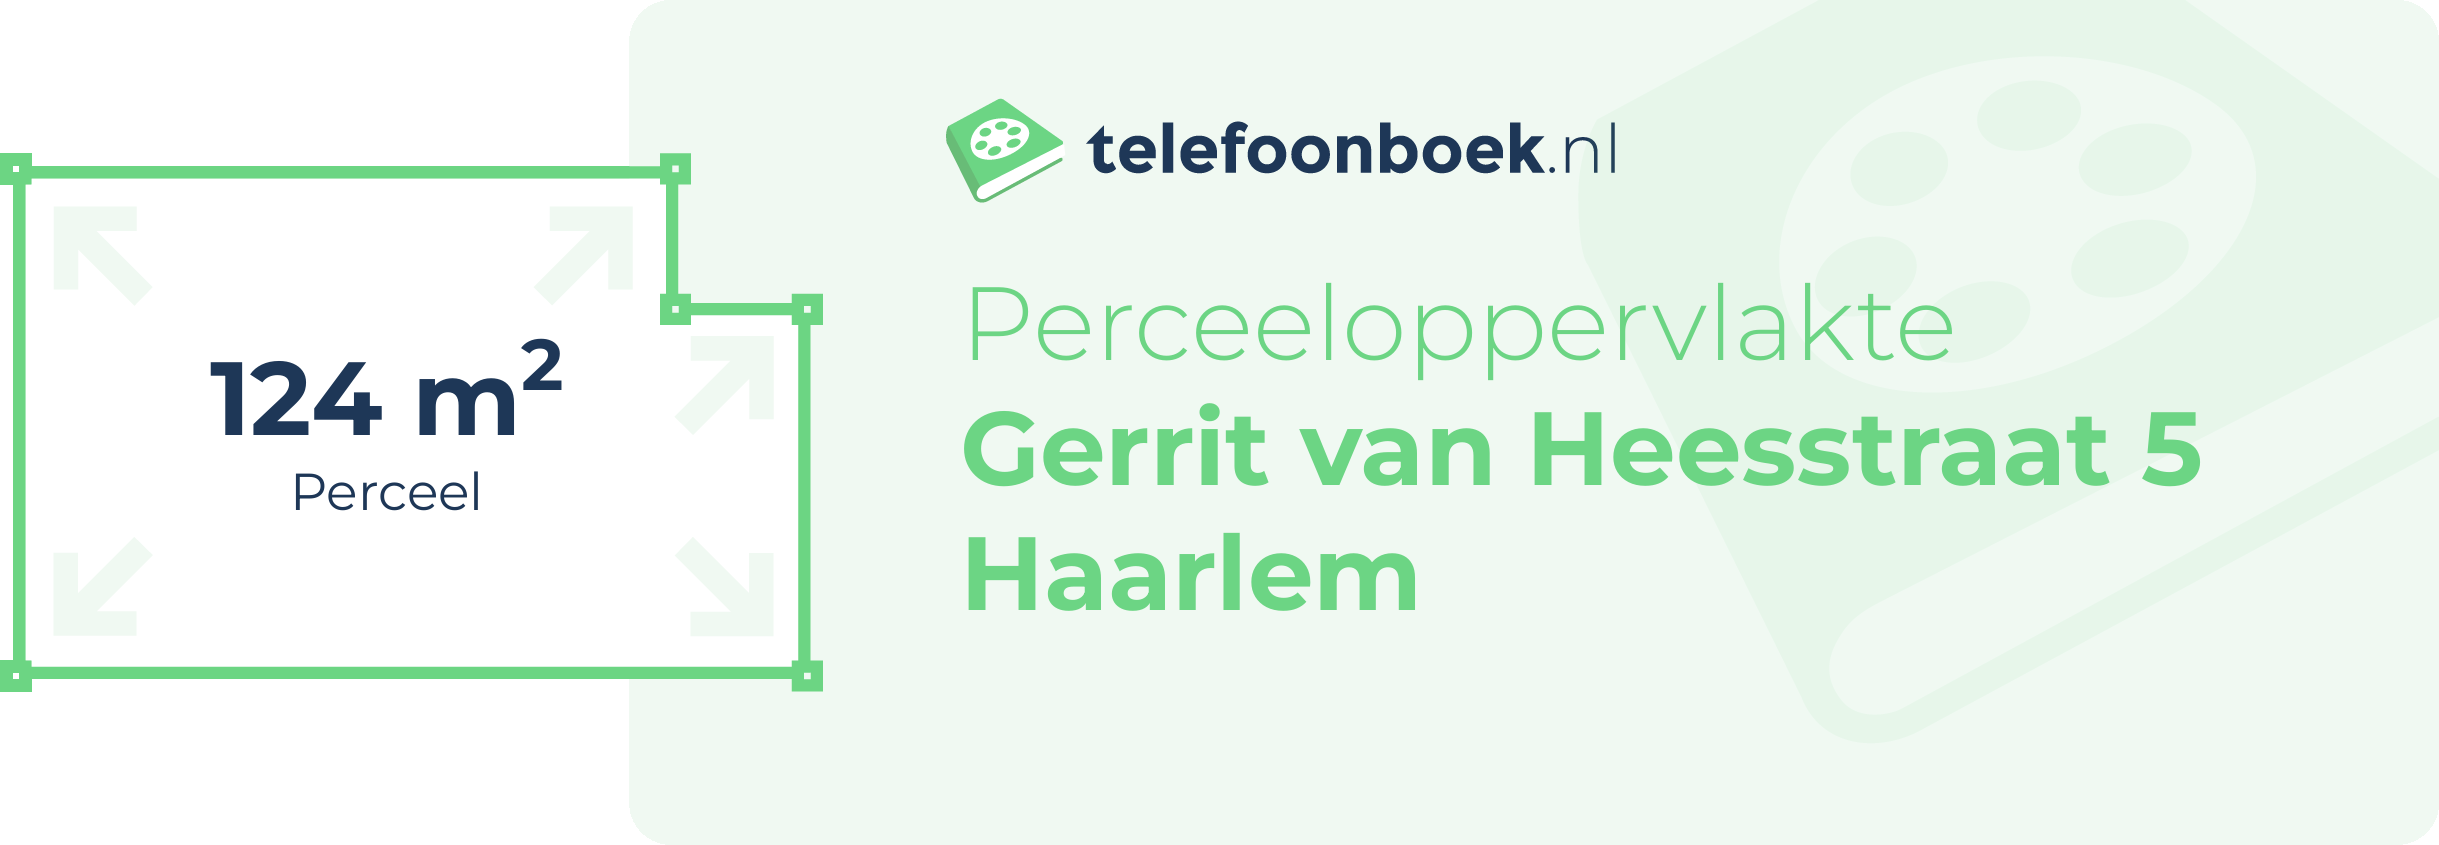 Perceeloppervlakte Gerrit Van Heesstraat 5 Haarlem